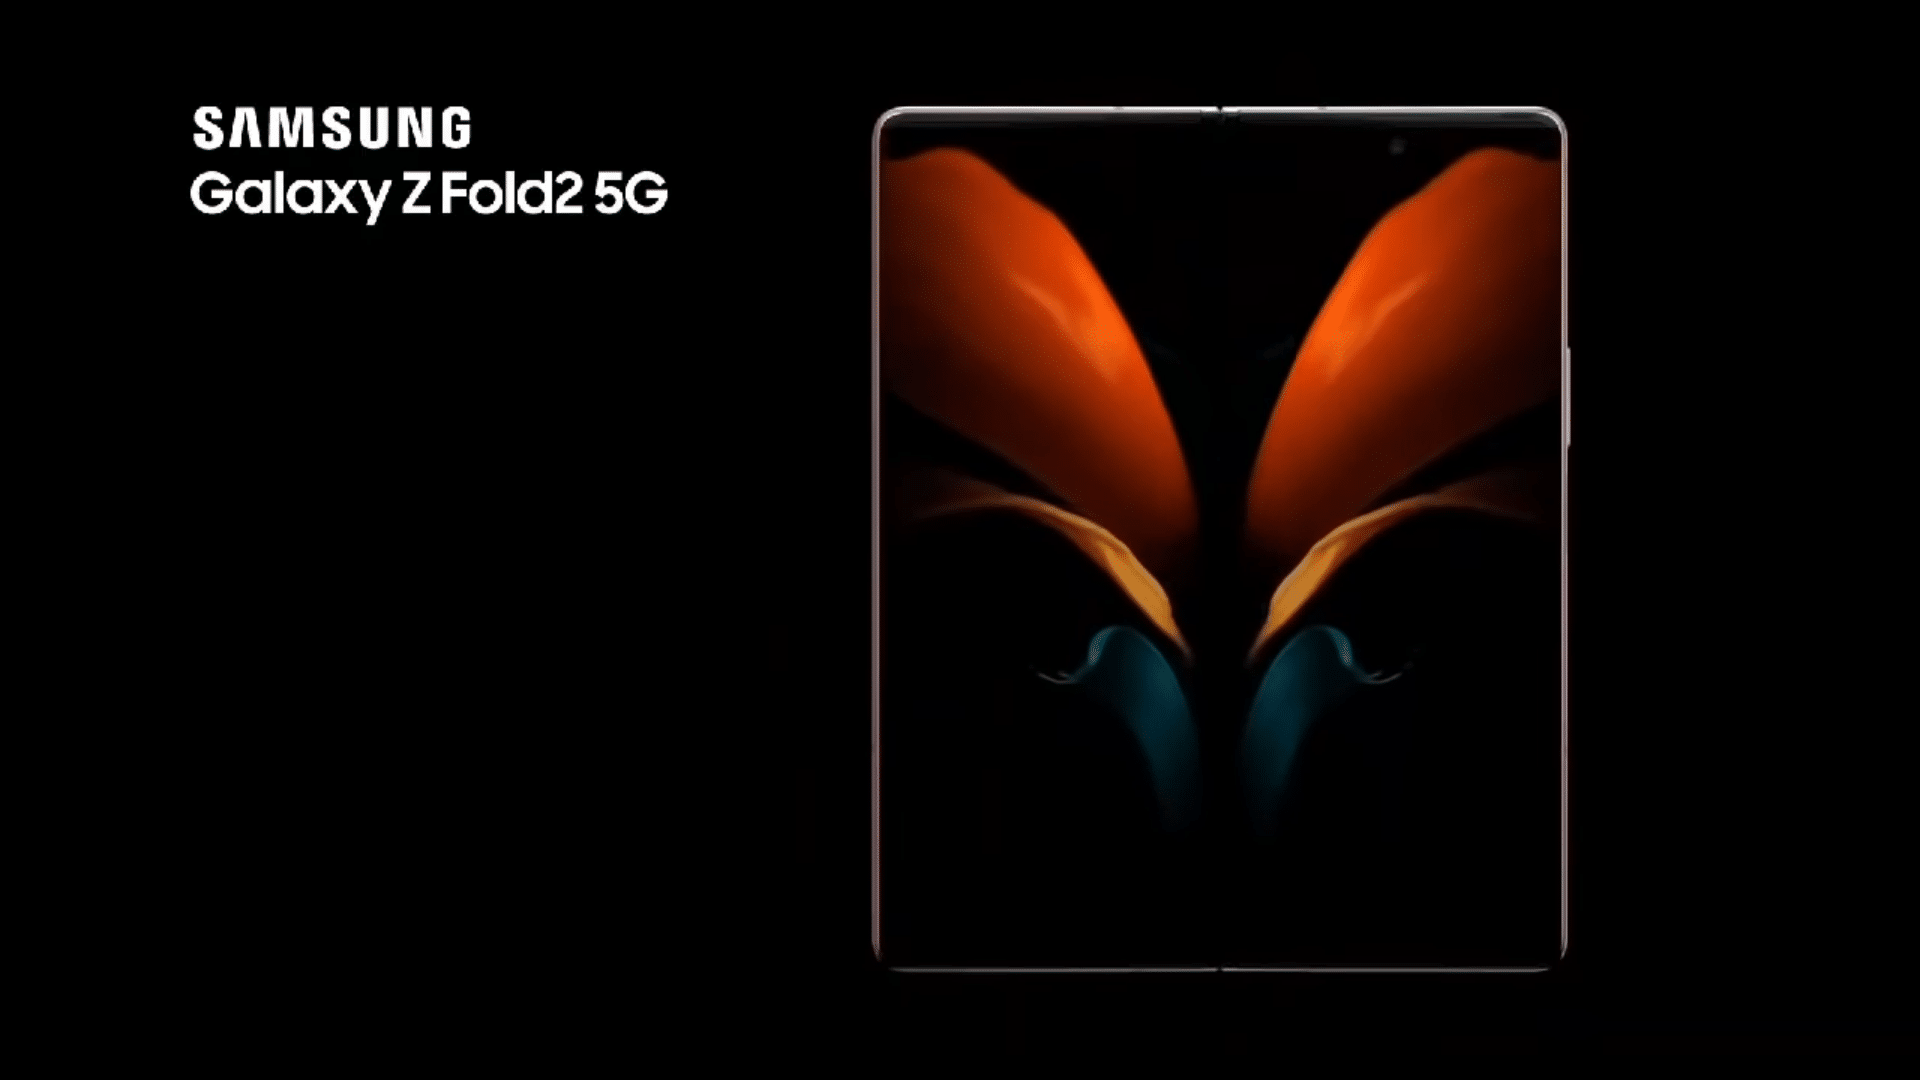 Xuất hiện video quảng cáo Galaxy Z Fold2 5G với các tính năng đáng chú ý